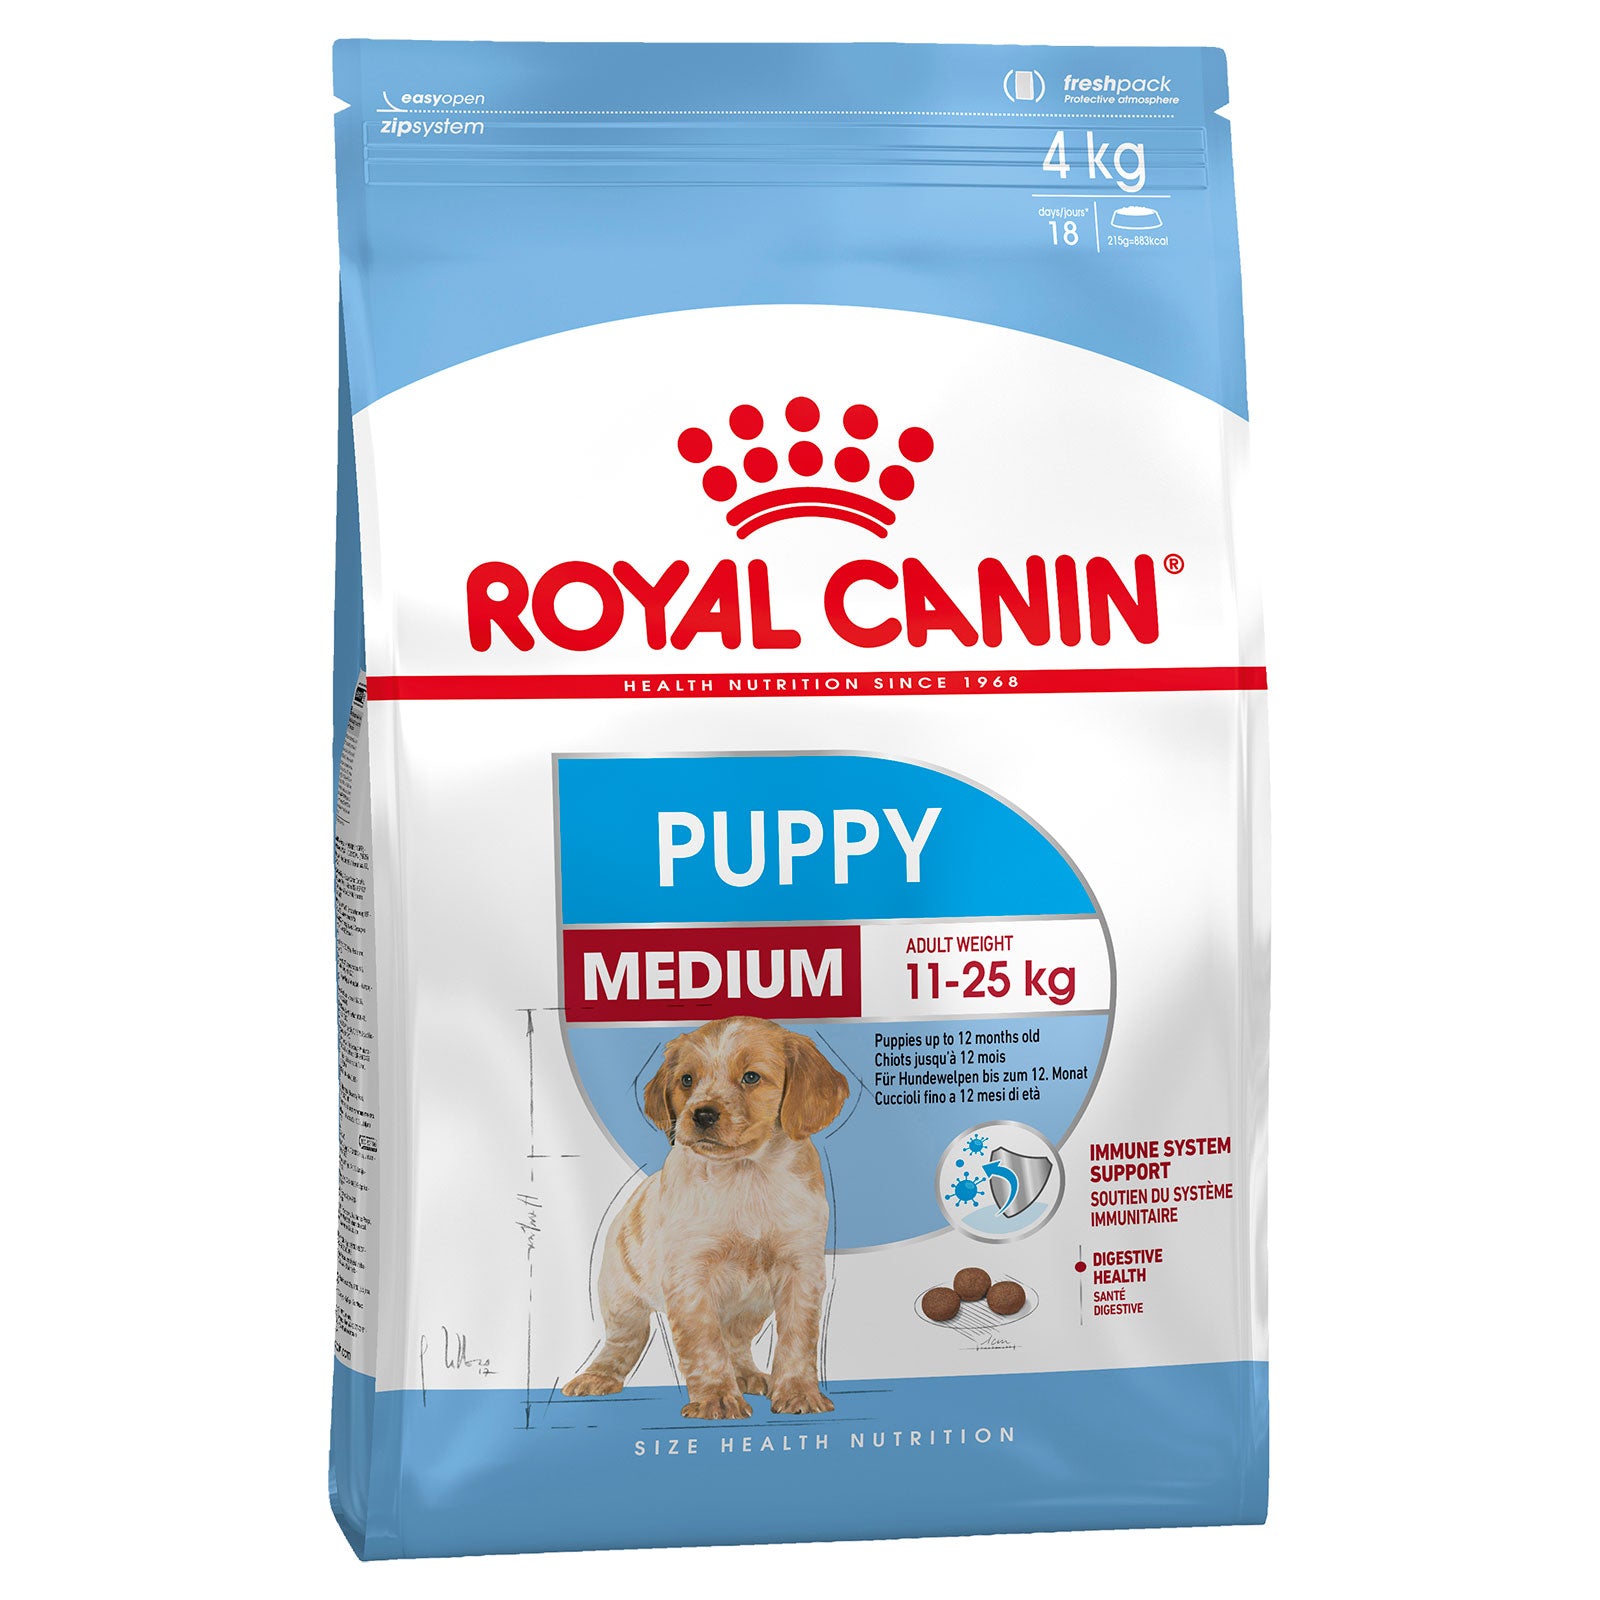 Royal Canin Dog Food Puppy Medium